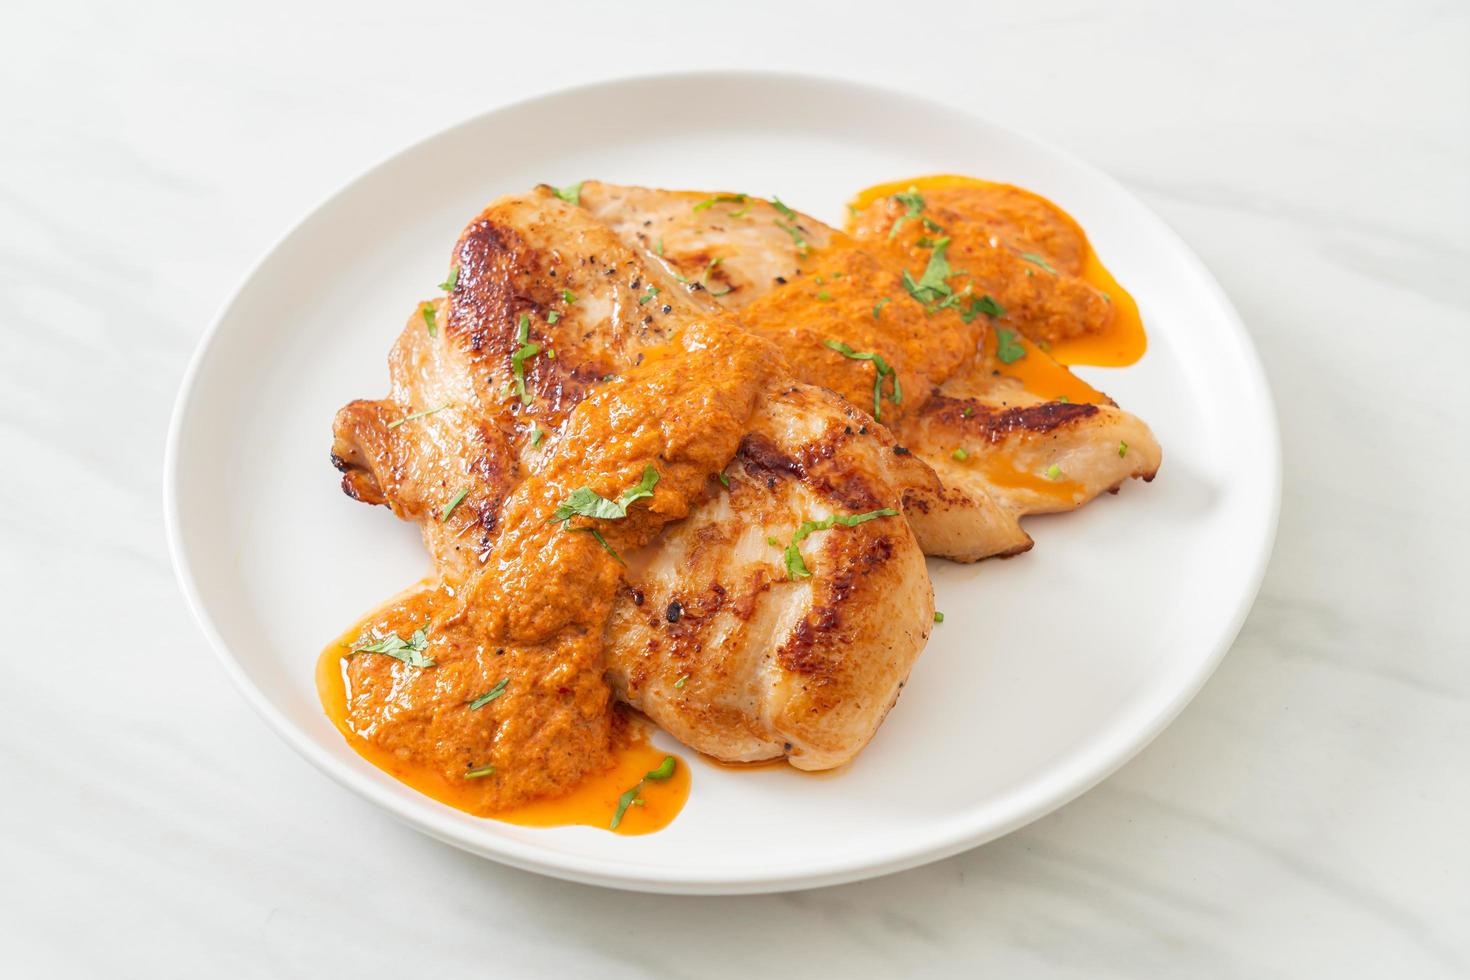 grillad kycklingstek med röd currysås foto